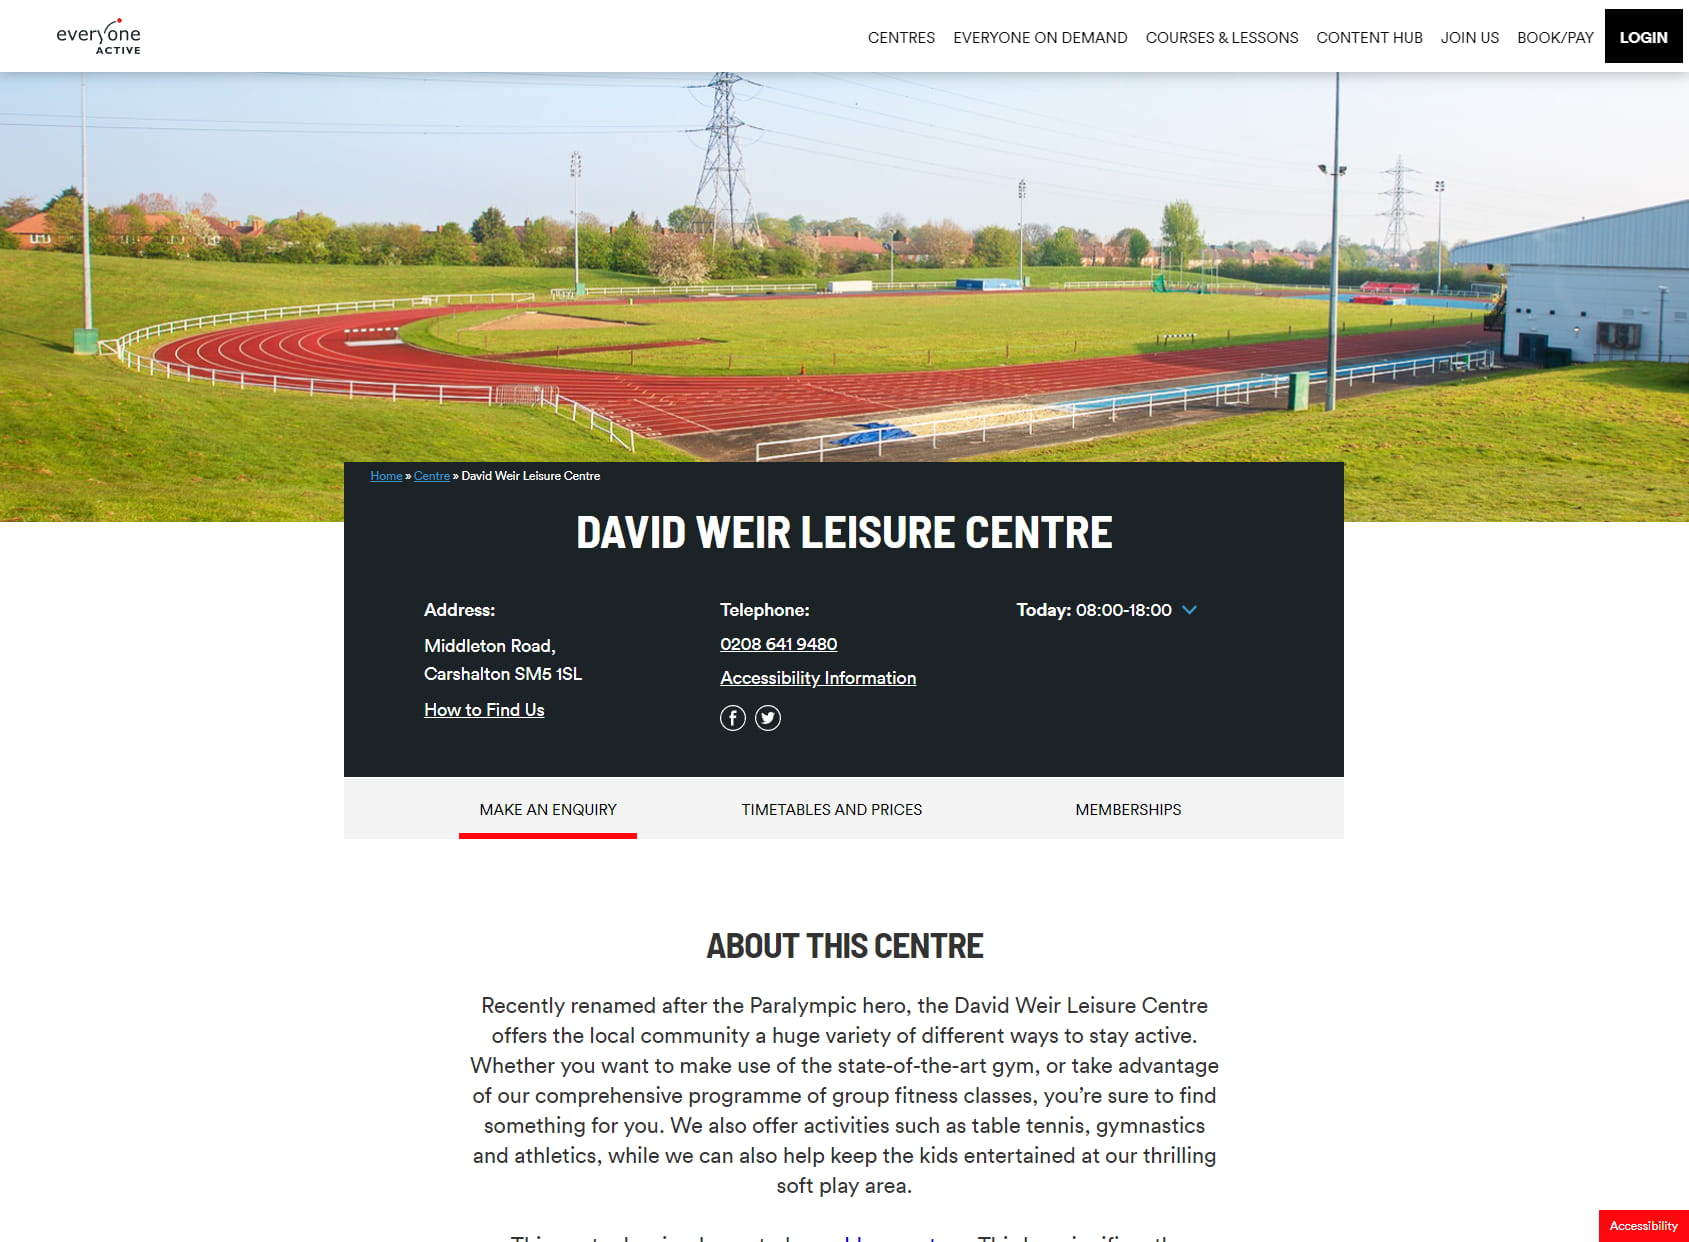 David Weir Leisure Centre